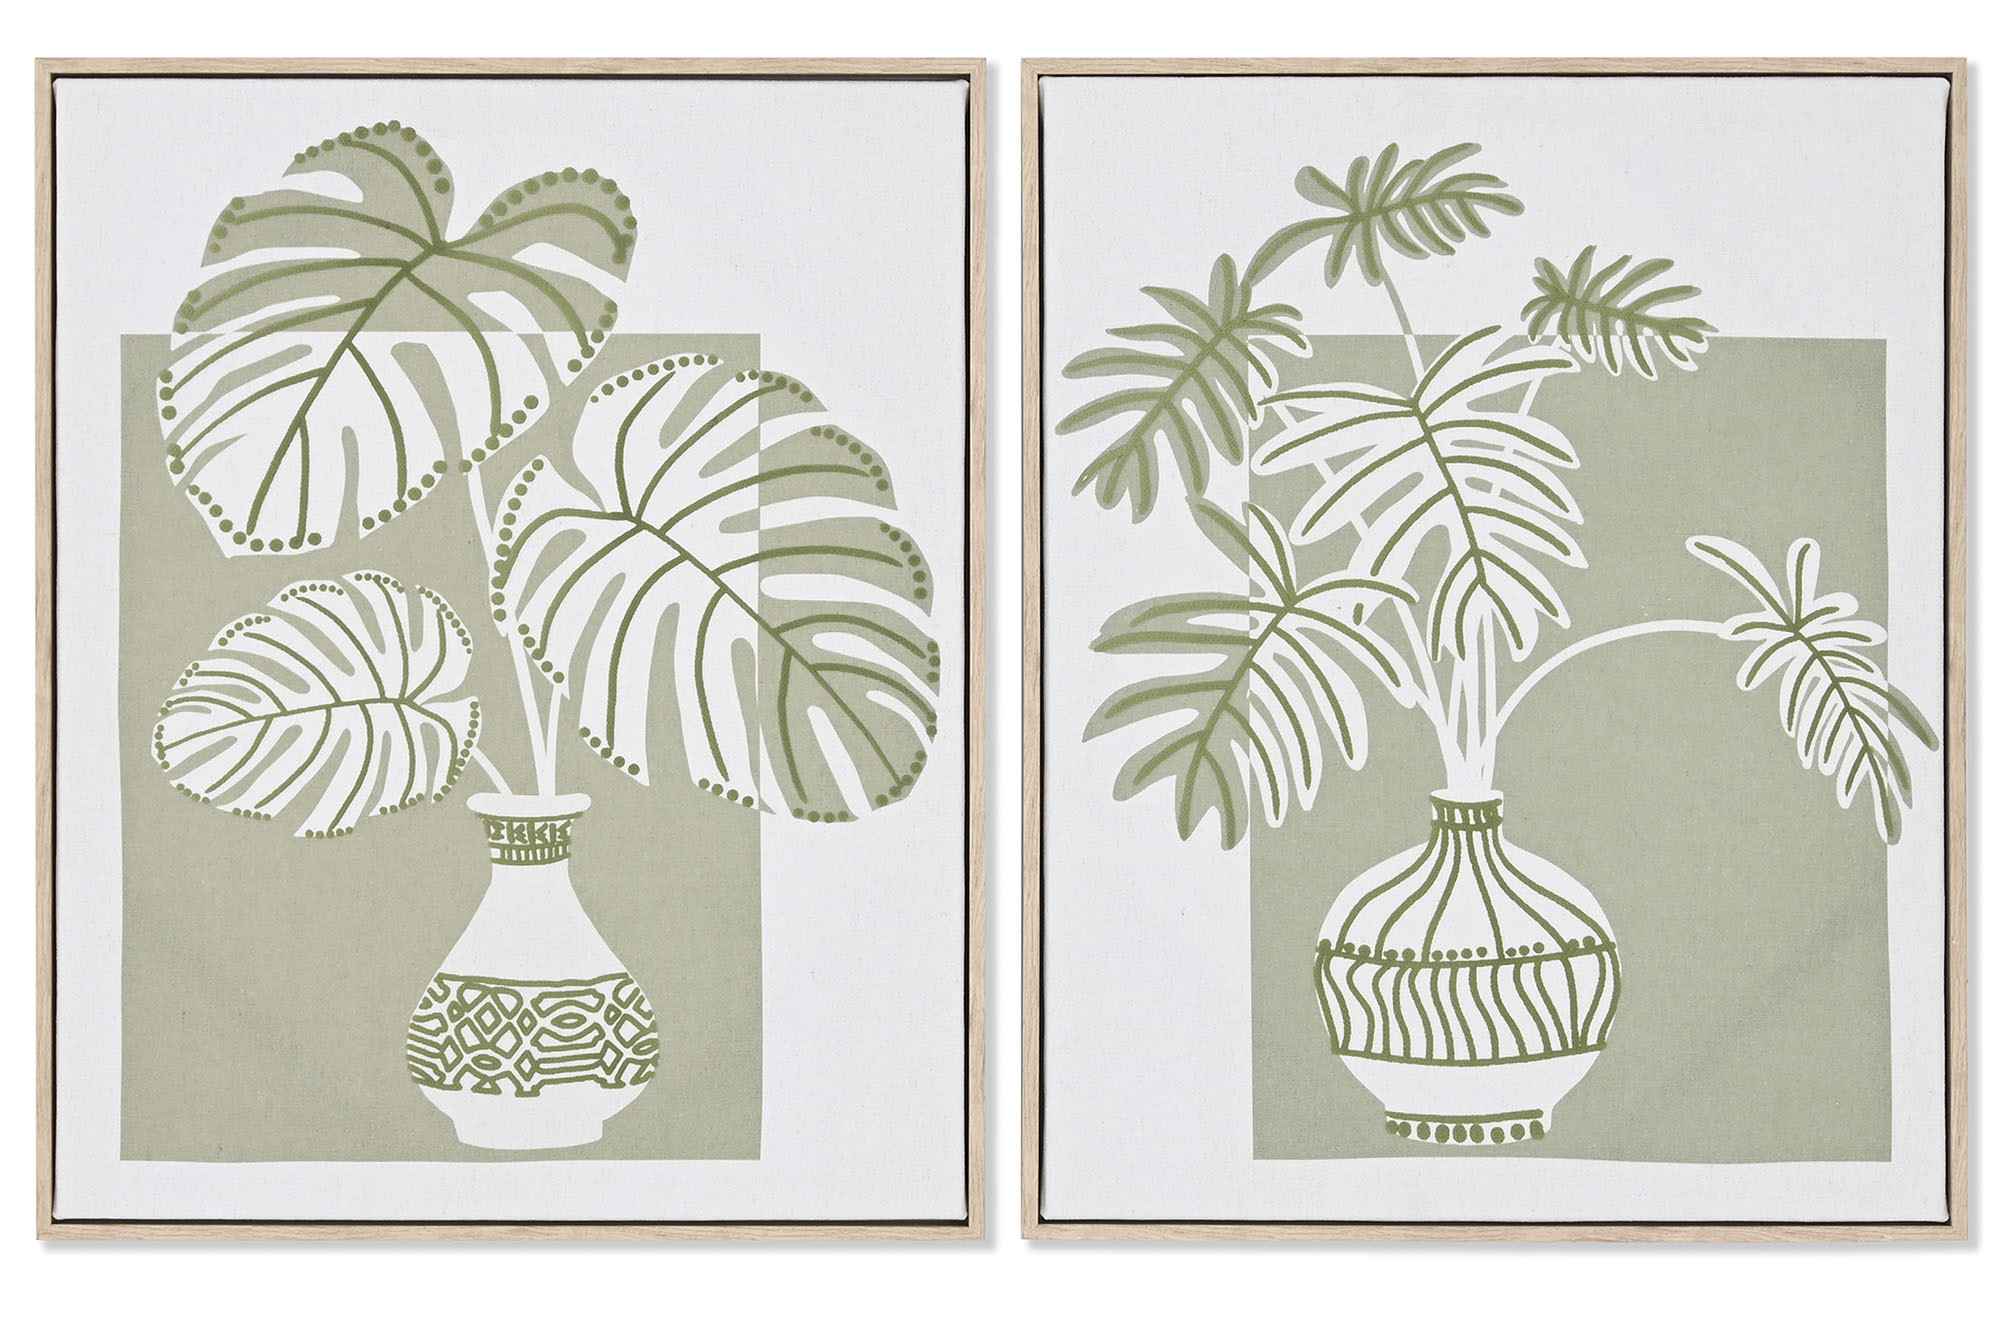 Sumérgete en un oasis de serenidad con nuestra colección de cuadros de palmeras verdes con efecto 3D! Transporta tu hogar a un paraíso tropical con estas impresionantes obras de arte que despiertan los sentidos y transforman cualquier espacio en un refugio de tranquilidad y belleza natural.